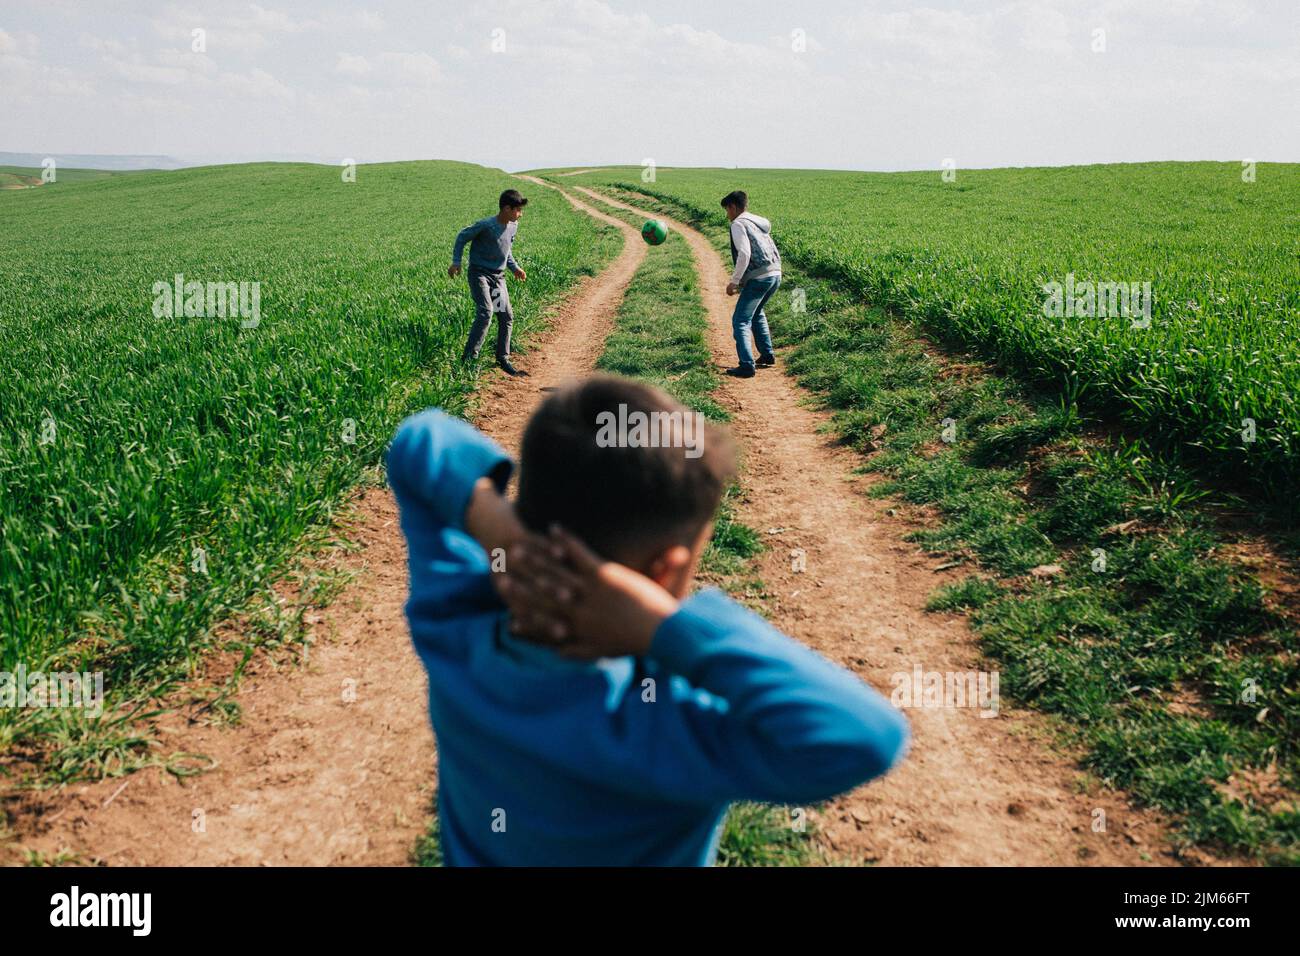 Ein Blick auf drei Schüler, die auf einem grünen Feld in der Provinz Hatay, Türkei, Straßenfußball spielen Stockfoto